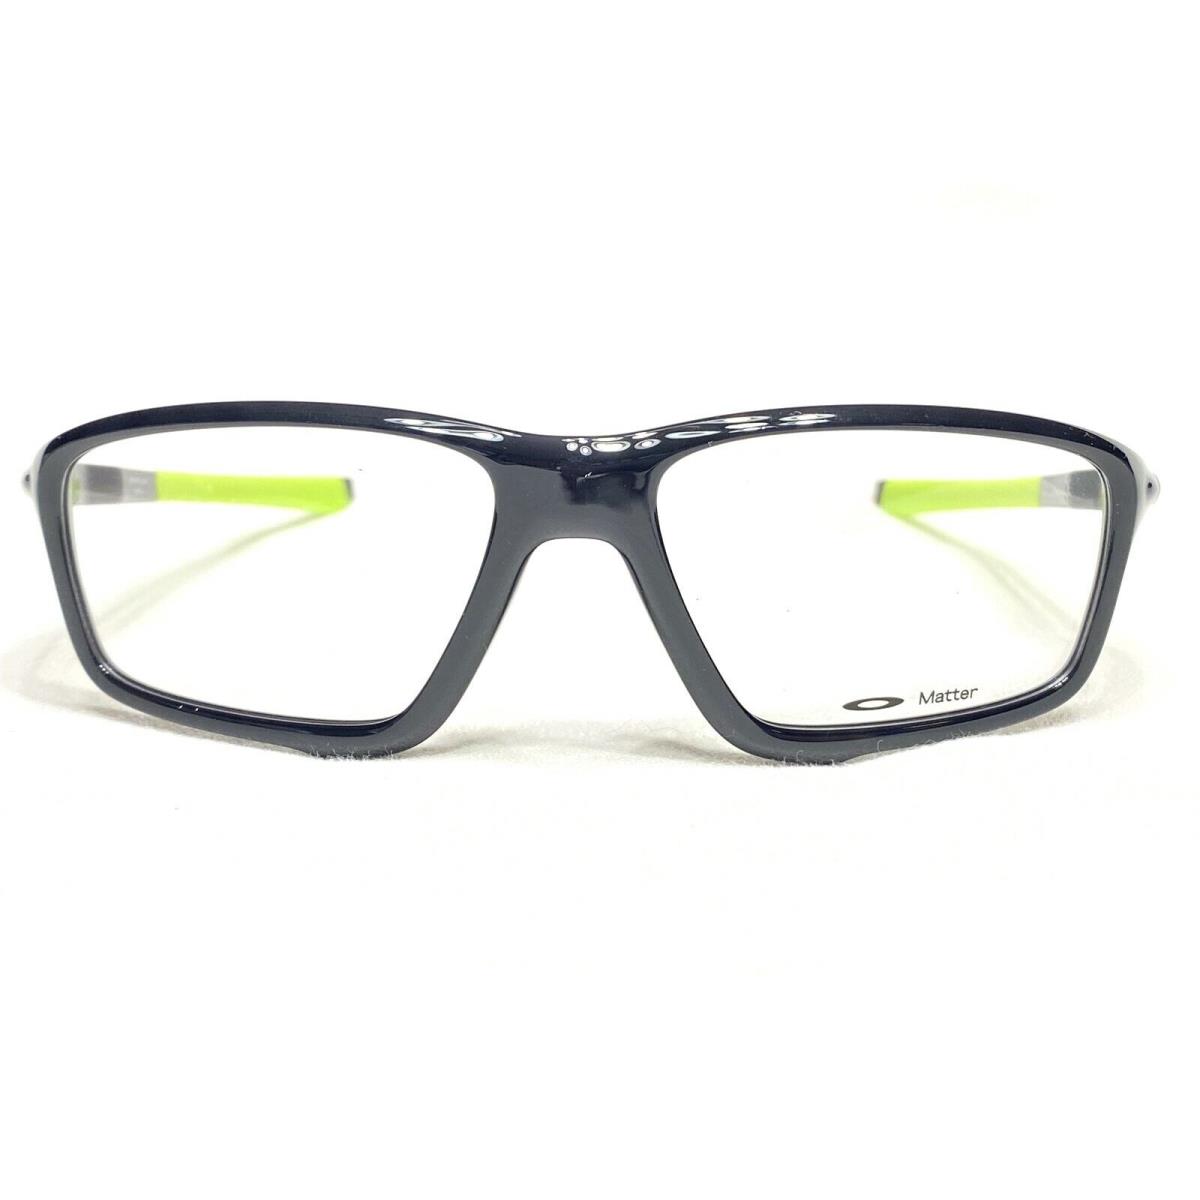 Oakley Crosslink Zero OX8076-0258 Mens Black Ink Eyeglasses Frames 58/16 - Black & Yellow , Polished Black Ink Frame, 0258 Manufacturer